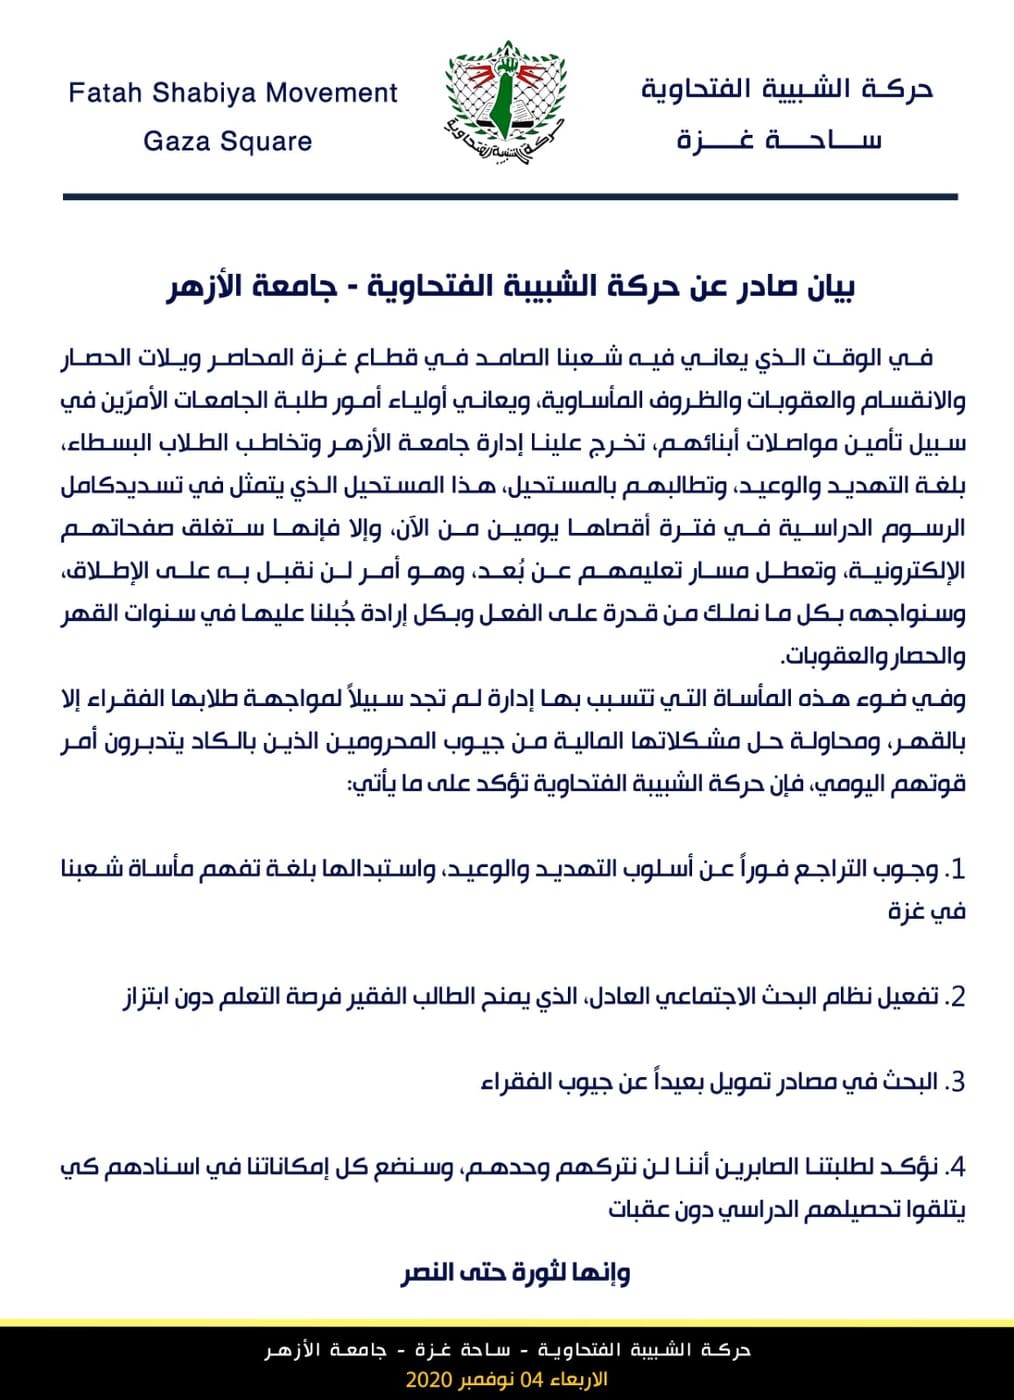 الشبيبة بساحة غزة تطالب جامعة الأزهر بالتراجع عن قرارها حول رسوم الطلبة